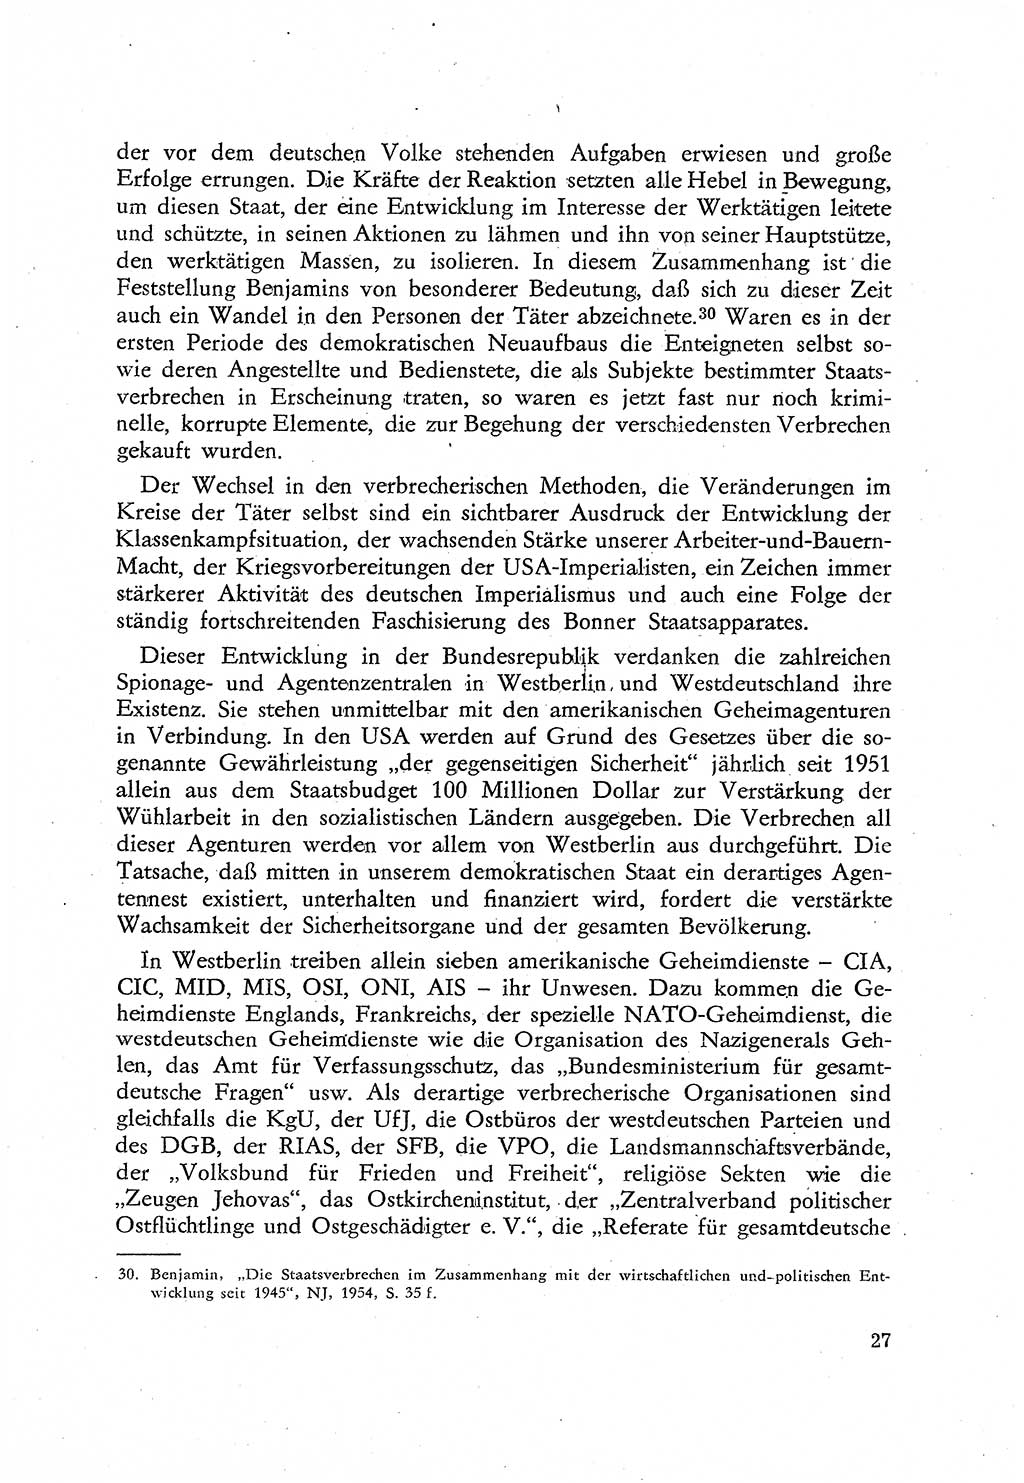 Beiträge zum Strafrecht [Deutsche Demokratische Republik (DDR)], Staatsverbrechen 1959, Seite 27 (Beitr. Strafr. DDR St.-Verbr. 1959, S. 27)